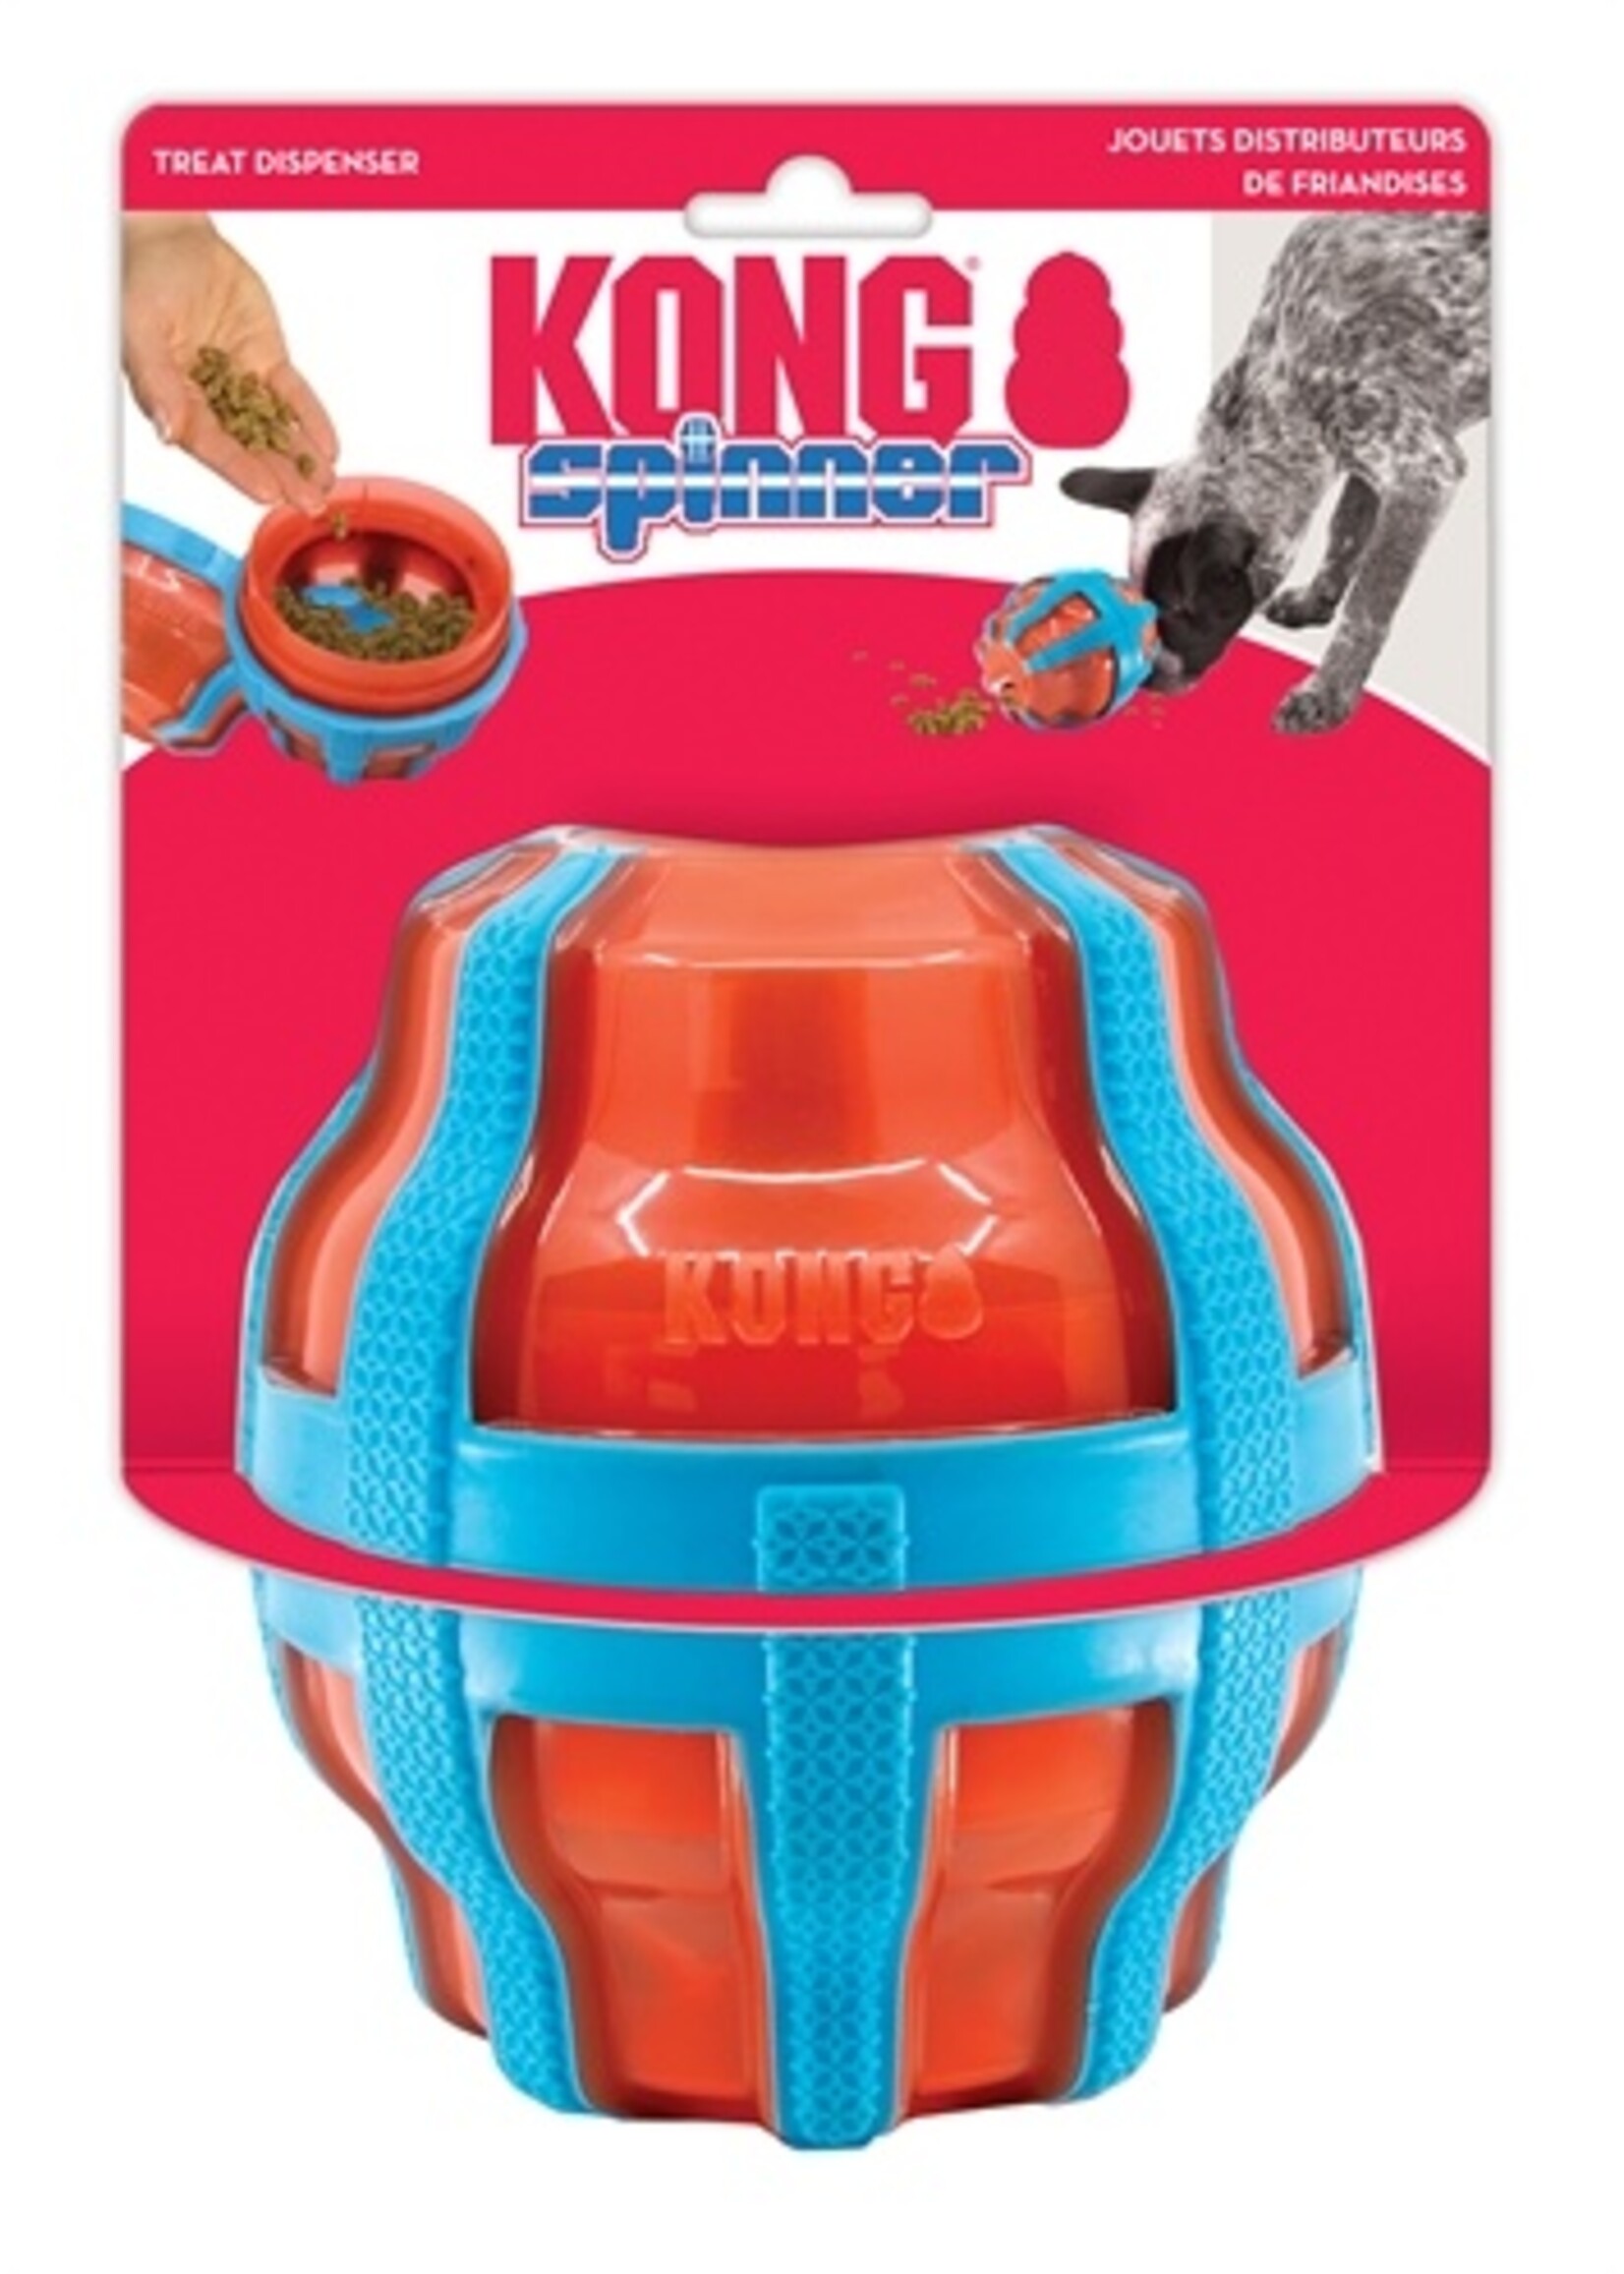 Kong Kong treat spinner voer / snack dispenser oranje / blauw